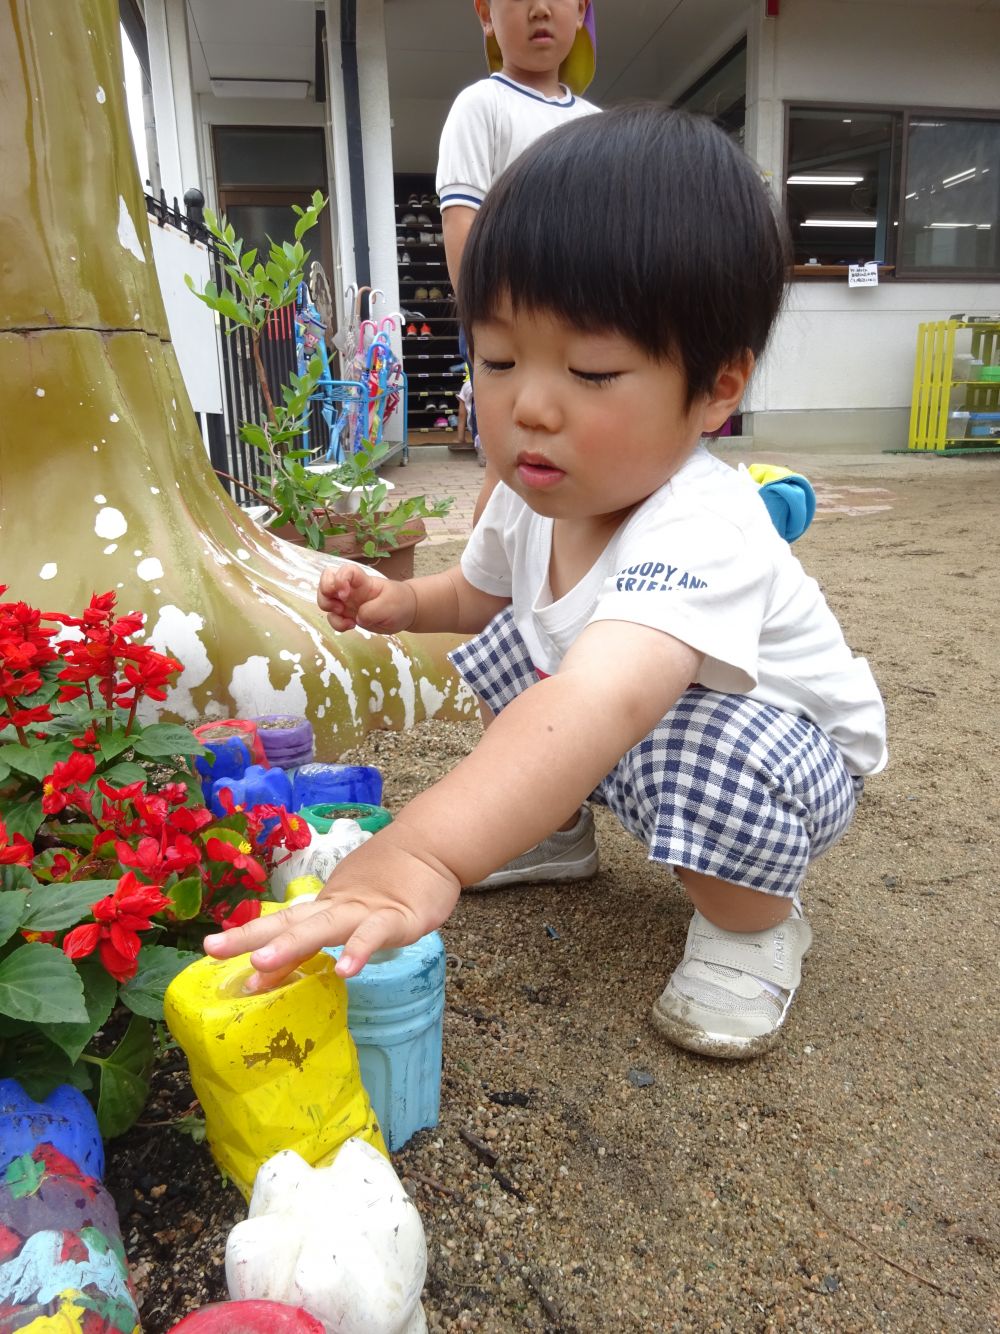 ヒヨコ組さんも雨あがりの園庭を探索♪
「お～～！！」と大きな声でなにかを発見したことを教えてくれるGくん。
指でちょんちょんと触って「ぴちゃぴちゃ！」

こんなところにもちっちゃな水たまりがありました😊 よく見つけたね♡

